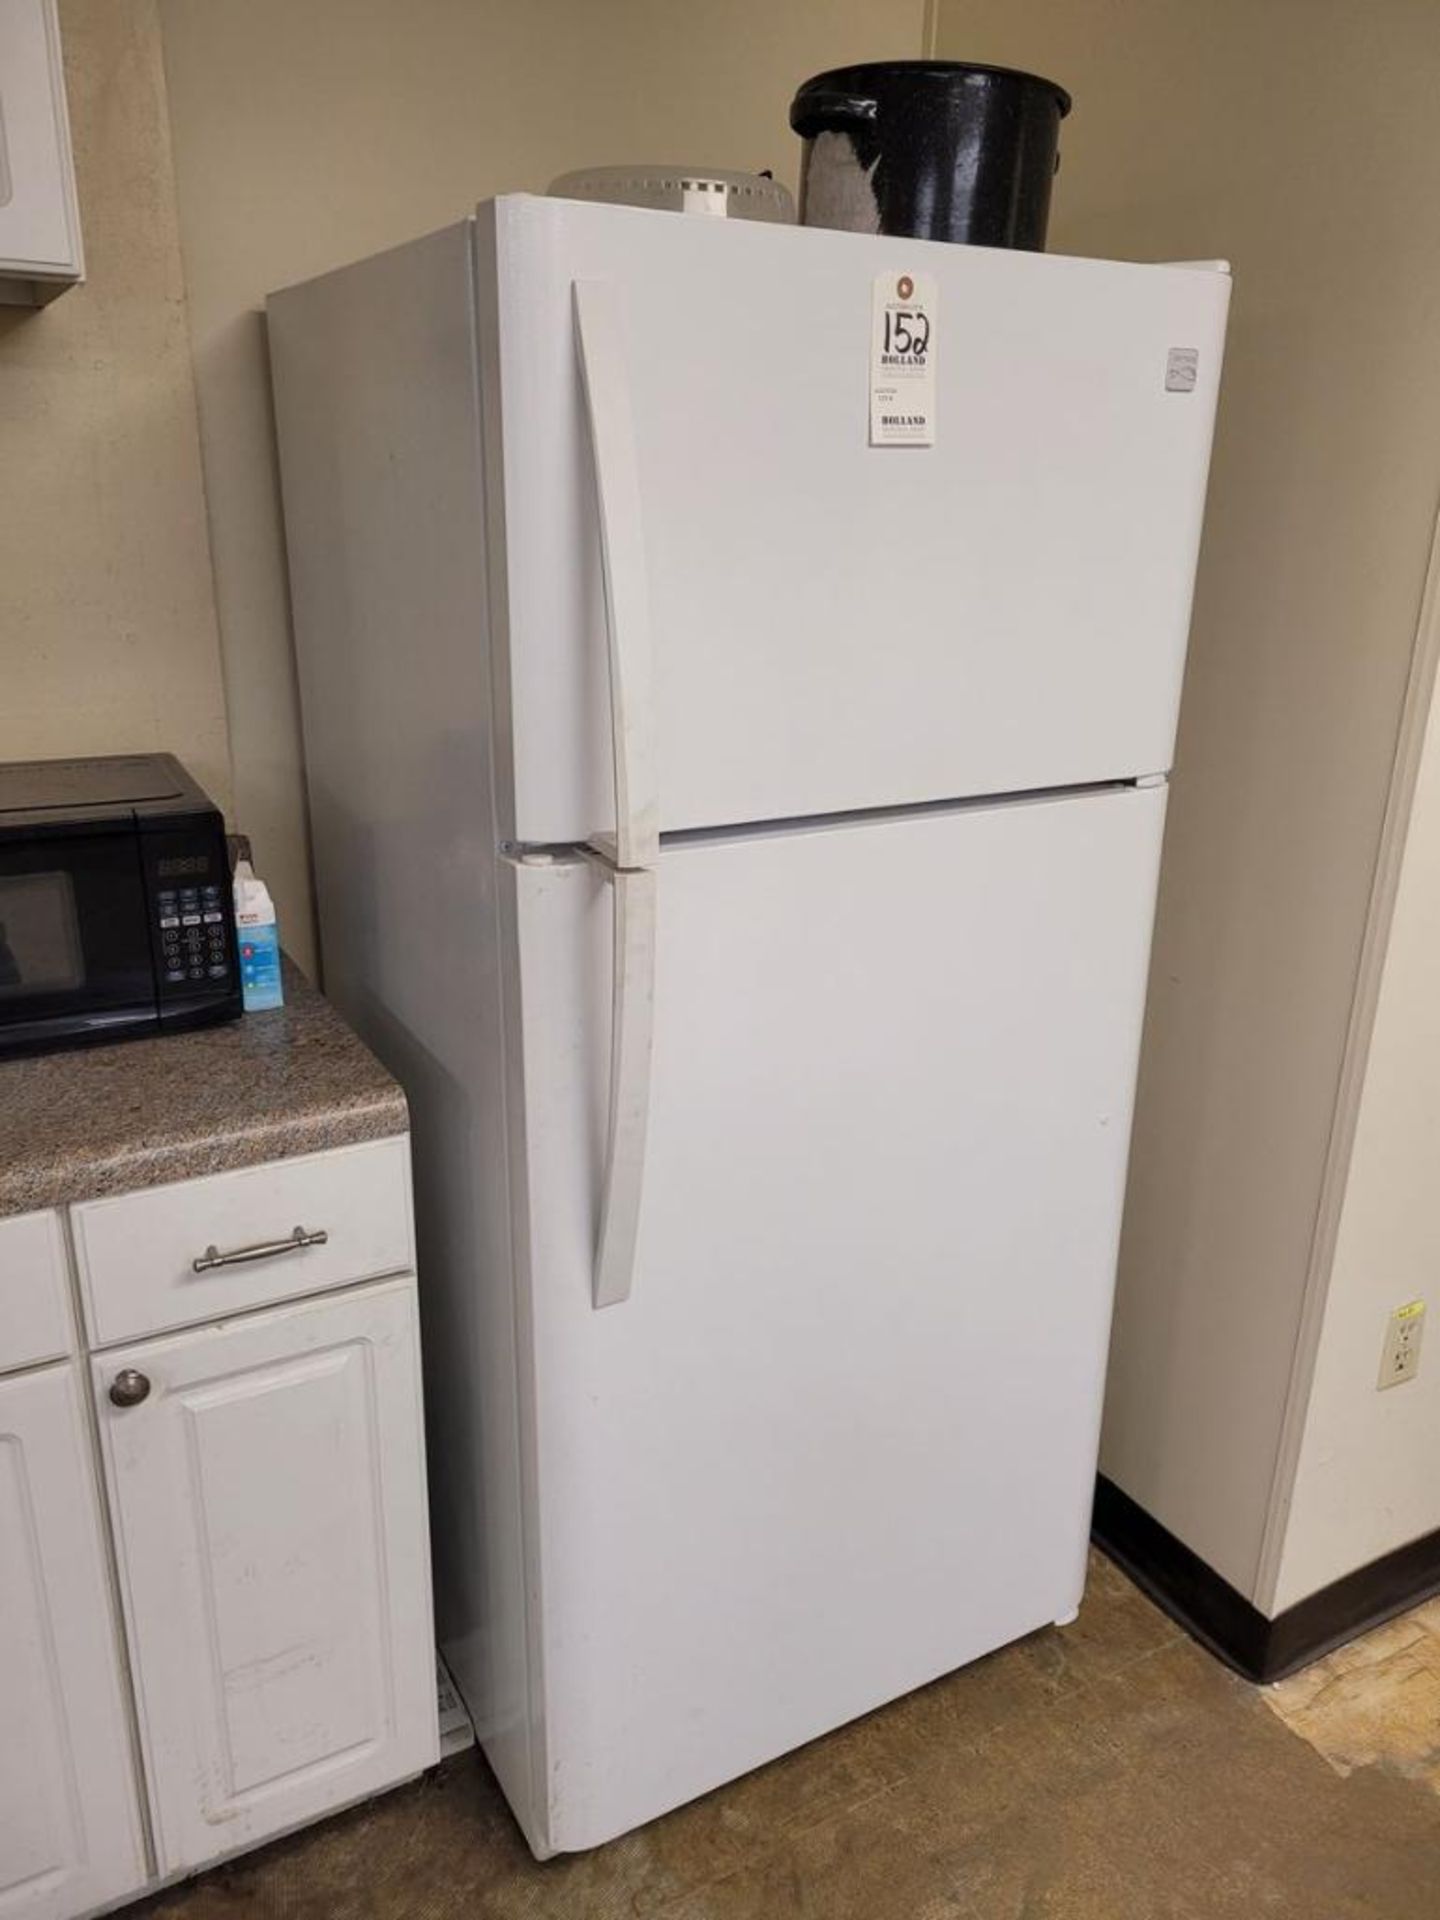 Kenmore Refrigerator: with Sunbeam Microwave, & Keurig Coffee Maker